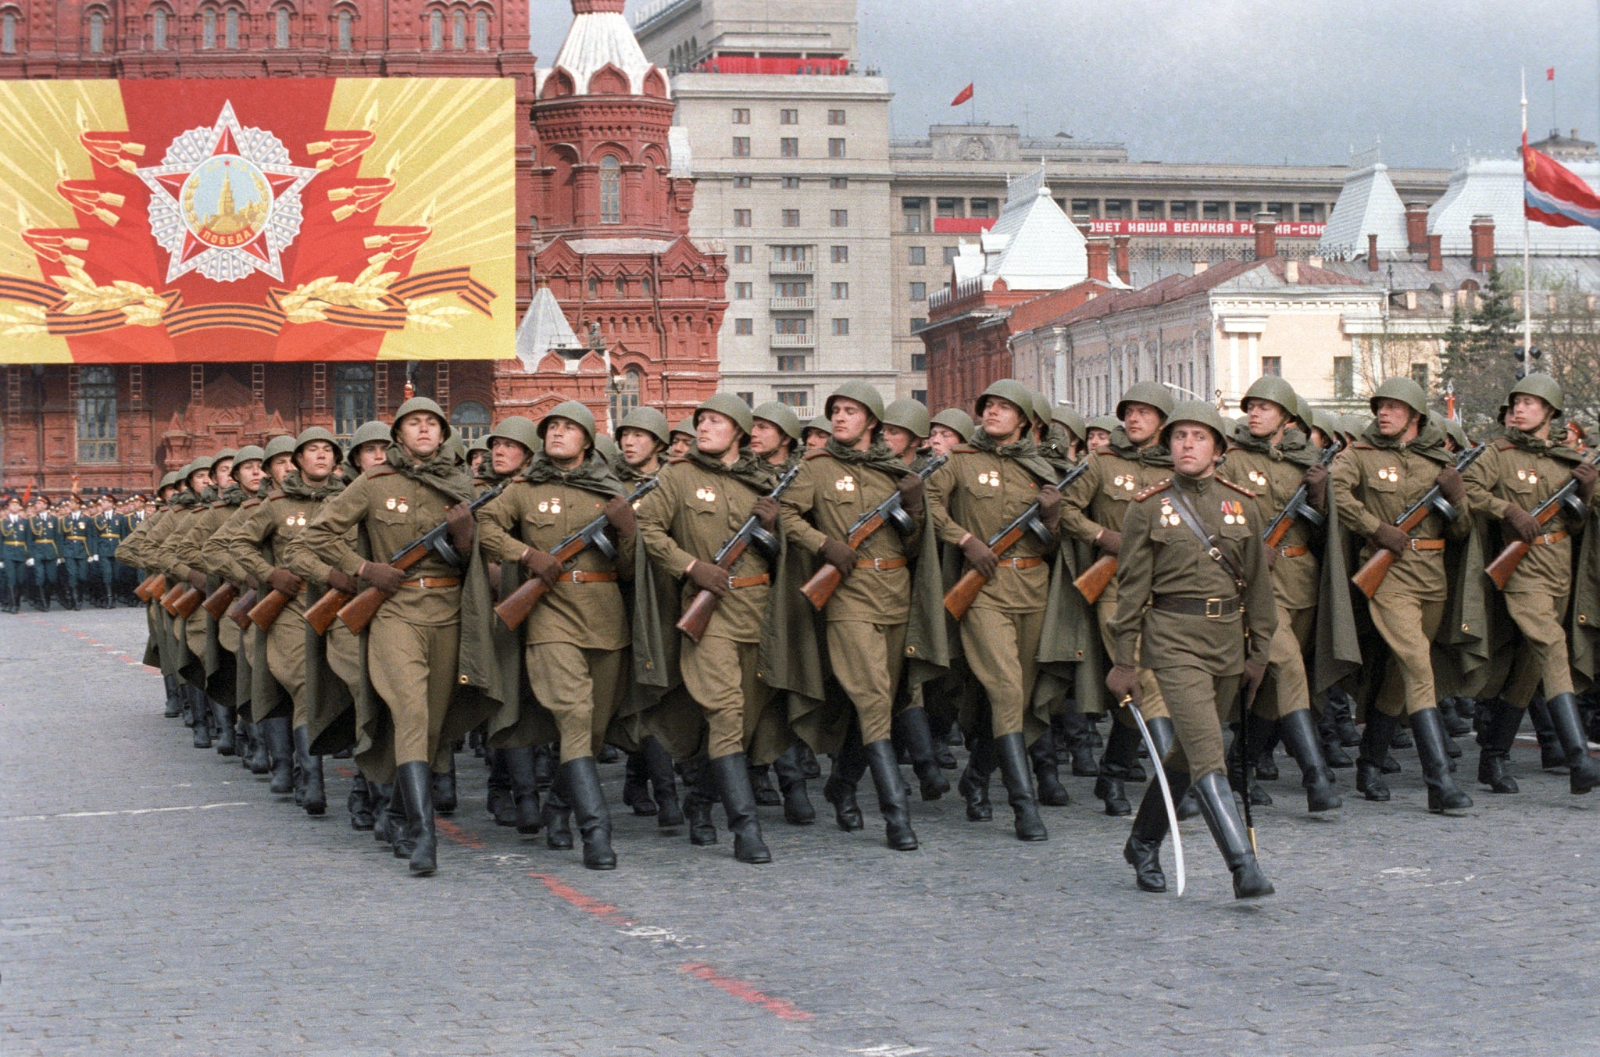 苏联老照片 1985年胜利日阅兵 苏联的最后一次重大阅兵